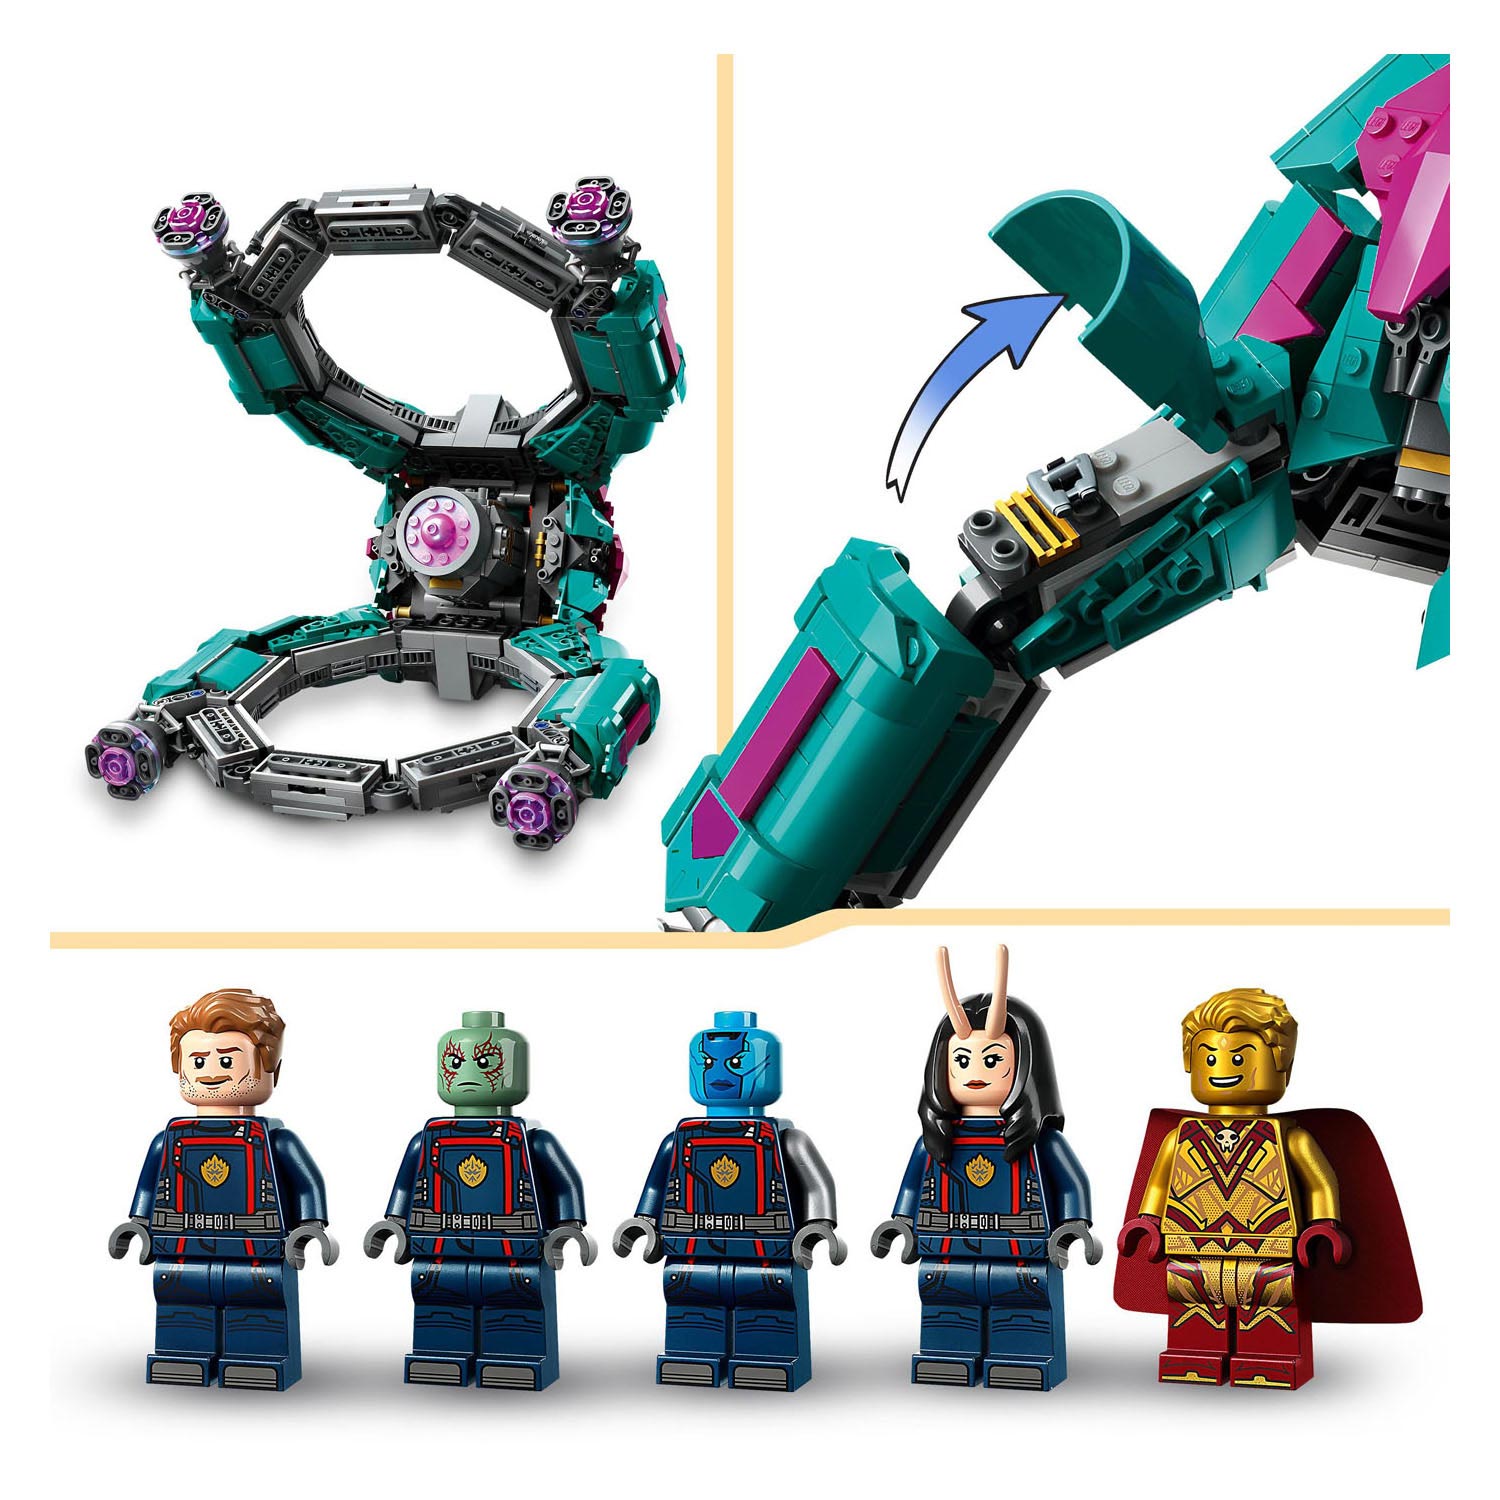 LEGO Super Heroes 76255 Het Nieuwe Schip van de Guardians